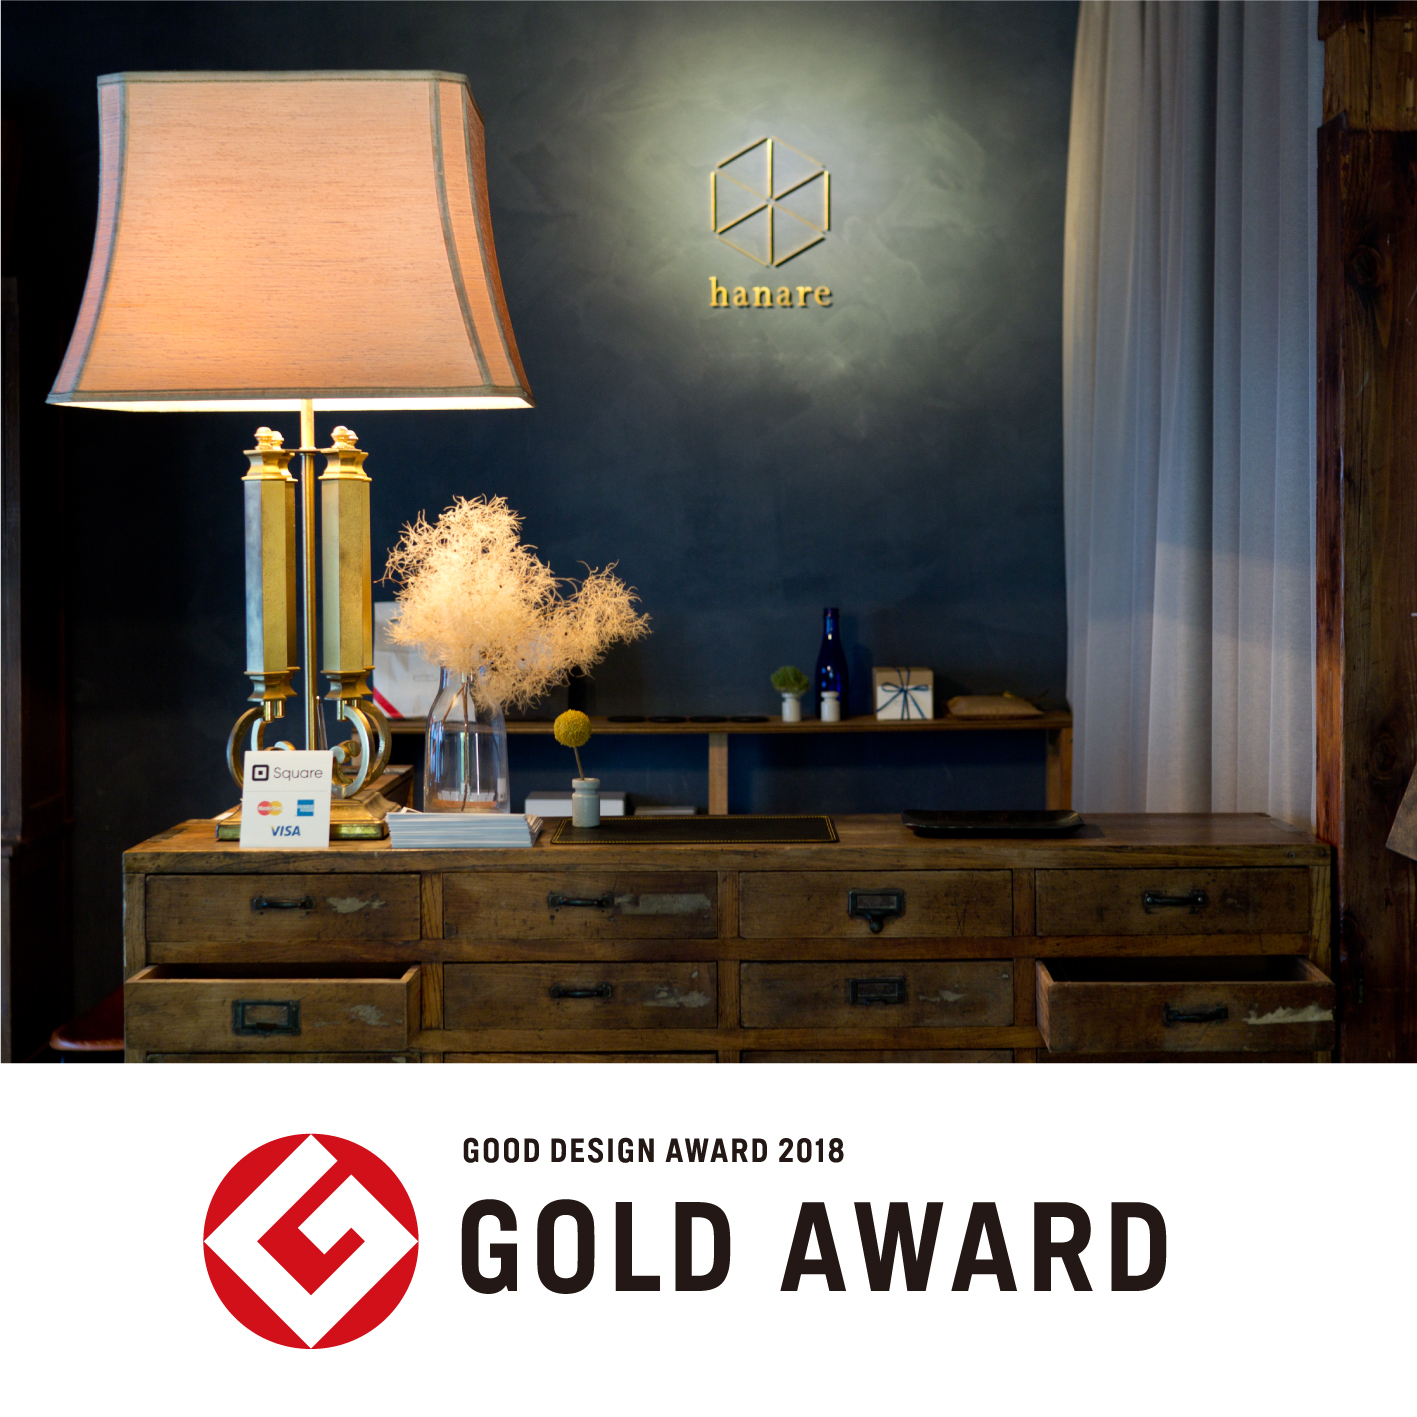 宿泊施設「hanare」がグッドデザイン金賞を受賞しました。